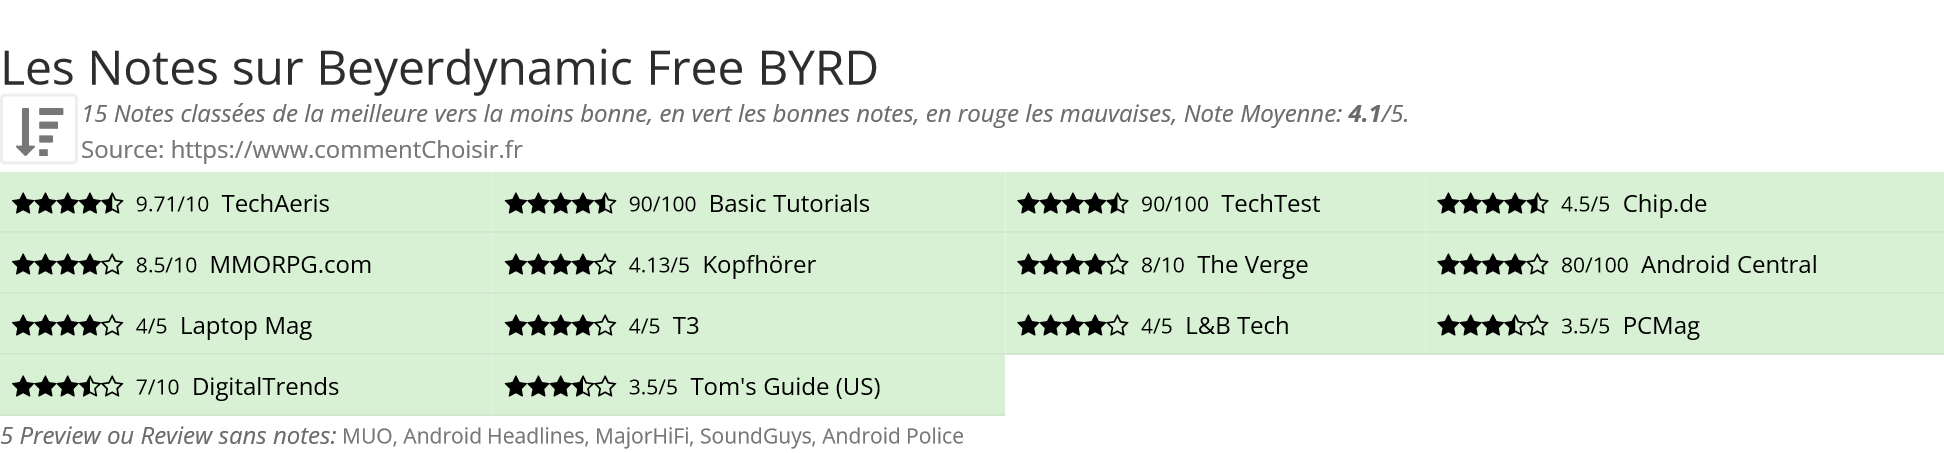 Ratings Beyerdynamic Free BYRD